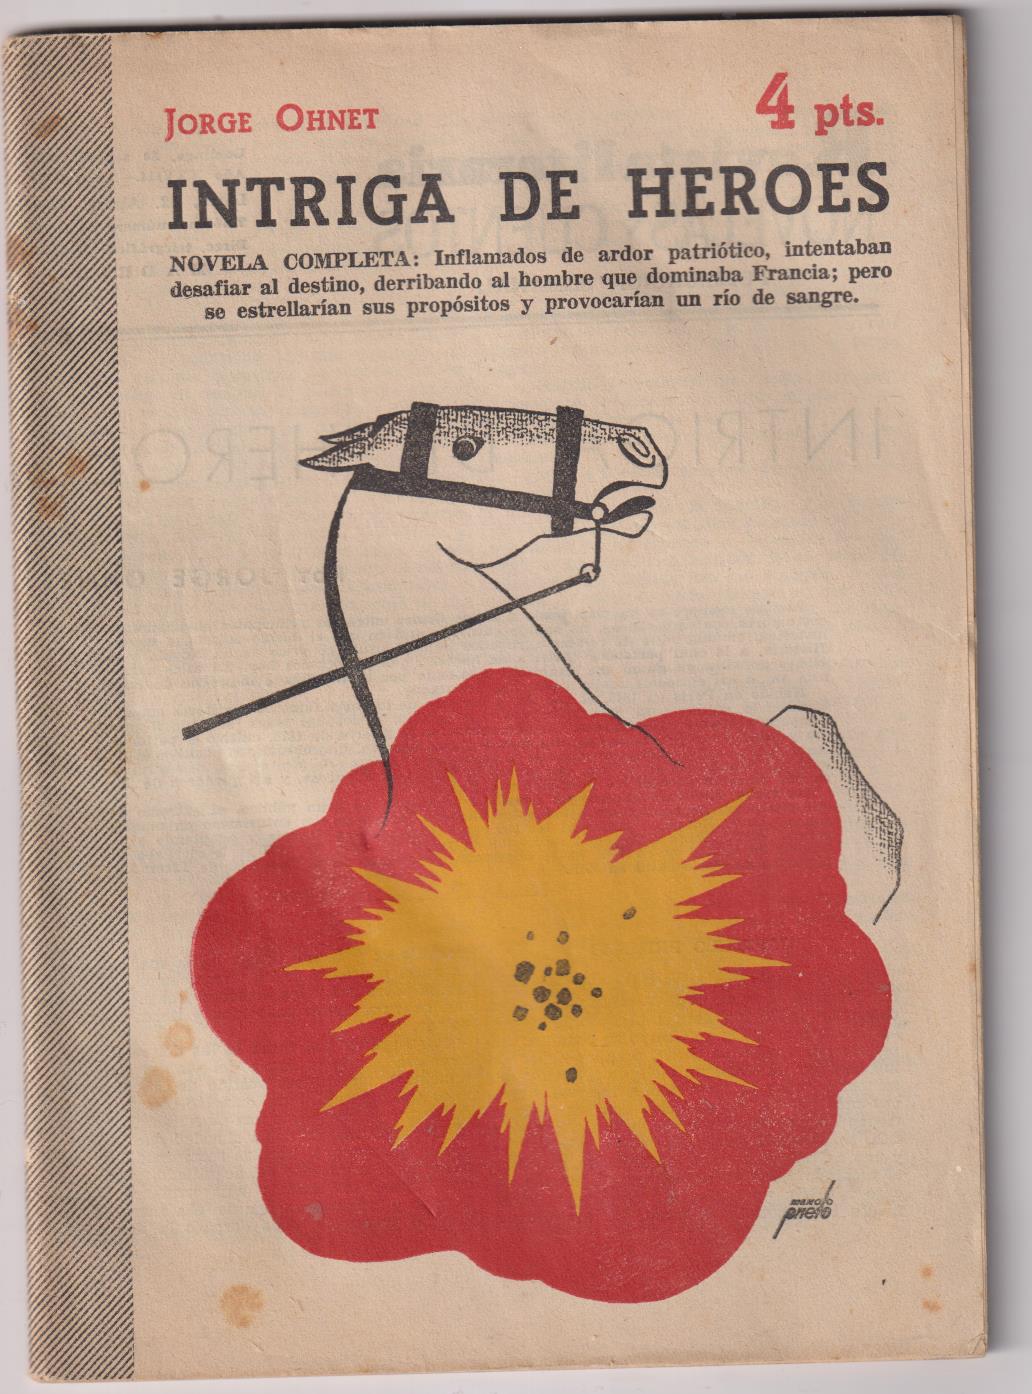 Revista Literaria Novelas y Cuentos nº 1325. Intriga de Héroes por Jorge Ohnet, año 1958